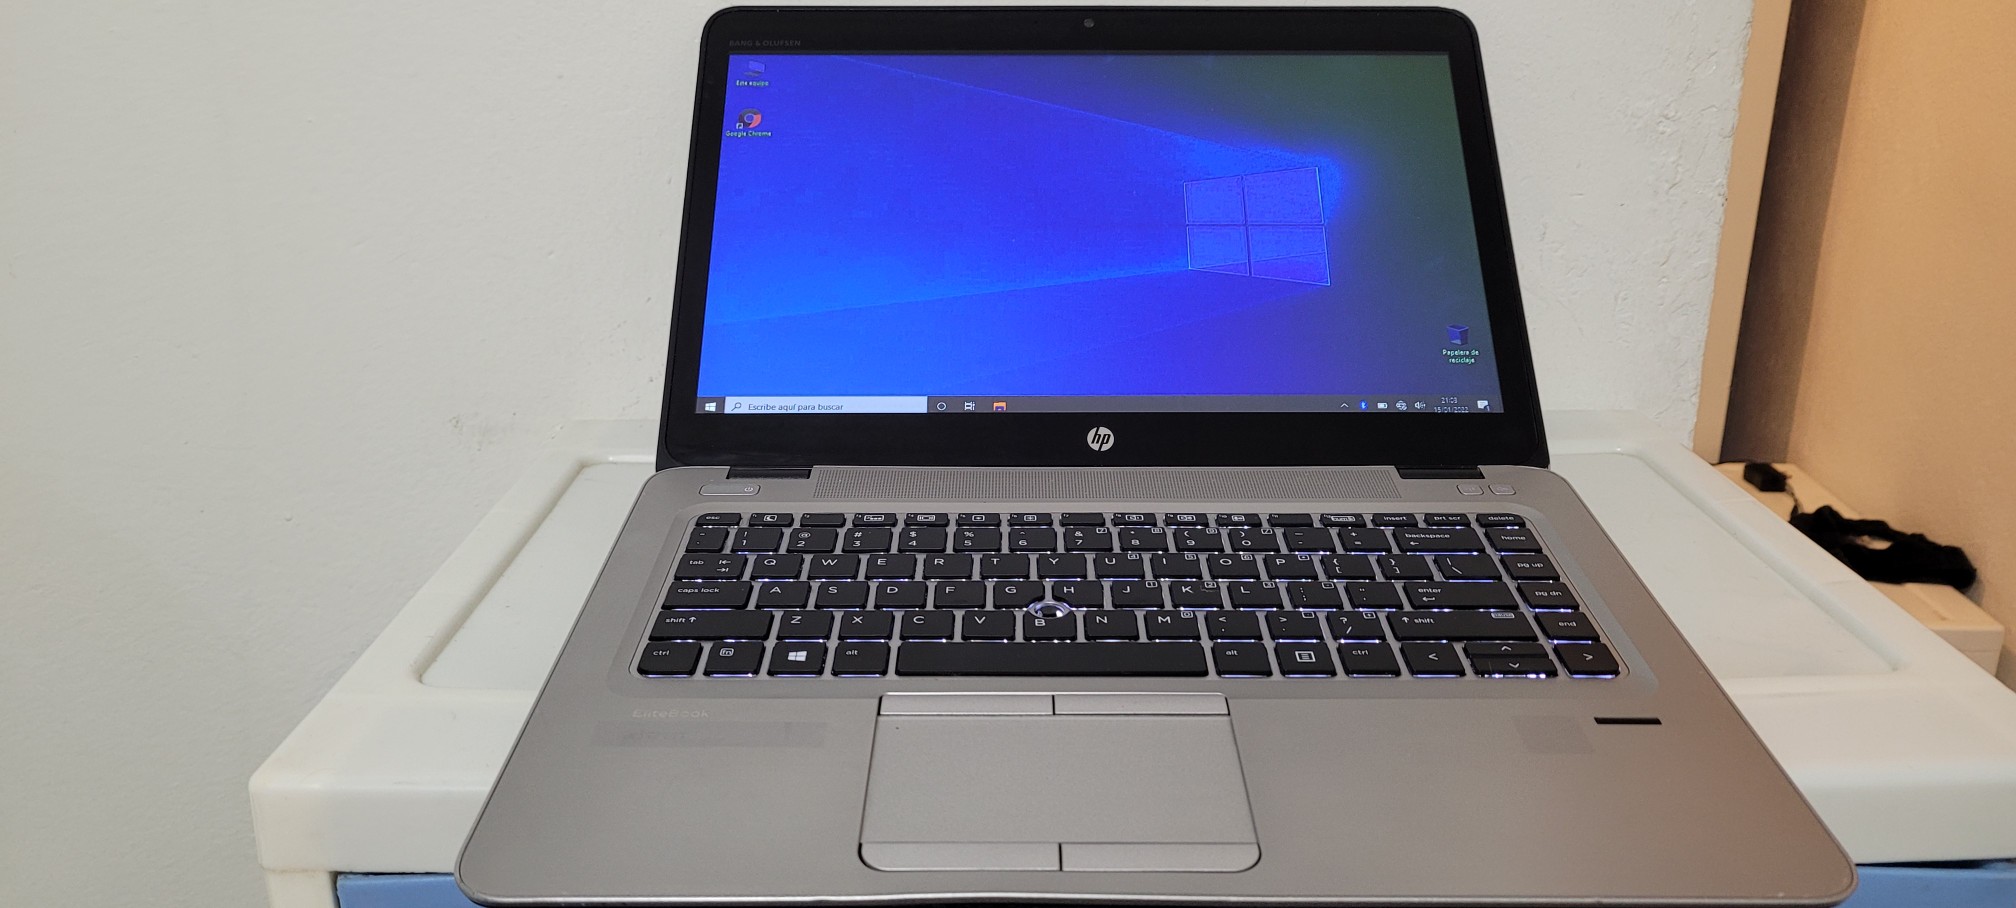 computadoras y laptops - Laptop hp G2 14 Pulg Core i5 6ta Gen Ram 8gb ddr4 Disco 500gb hdmi Wifi 0